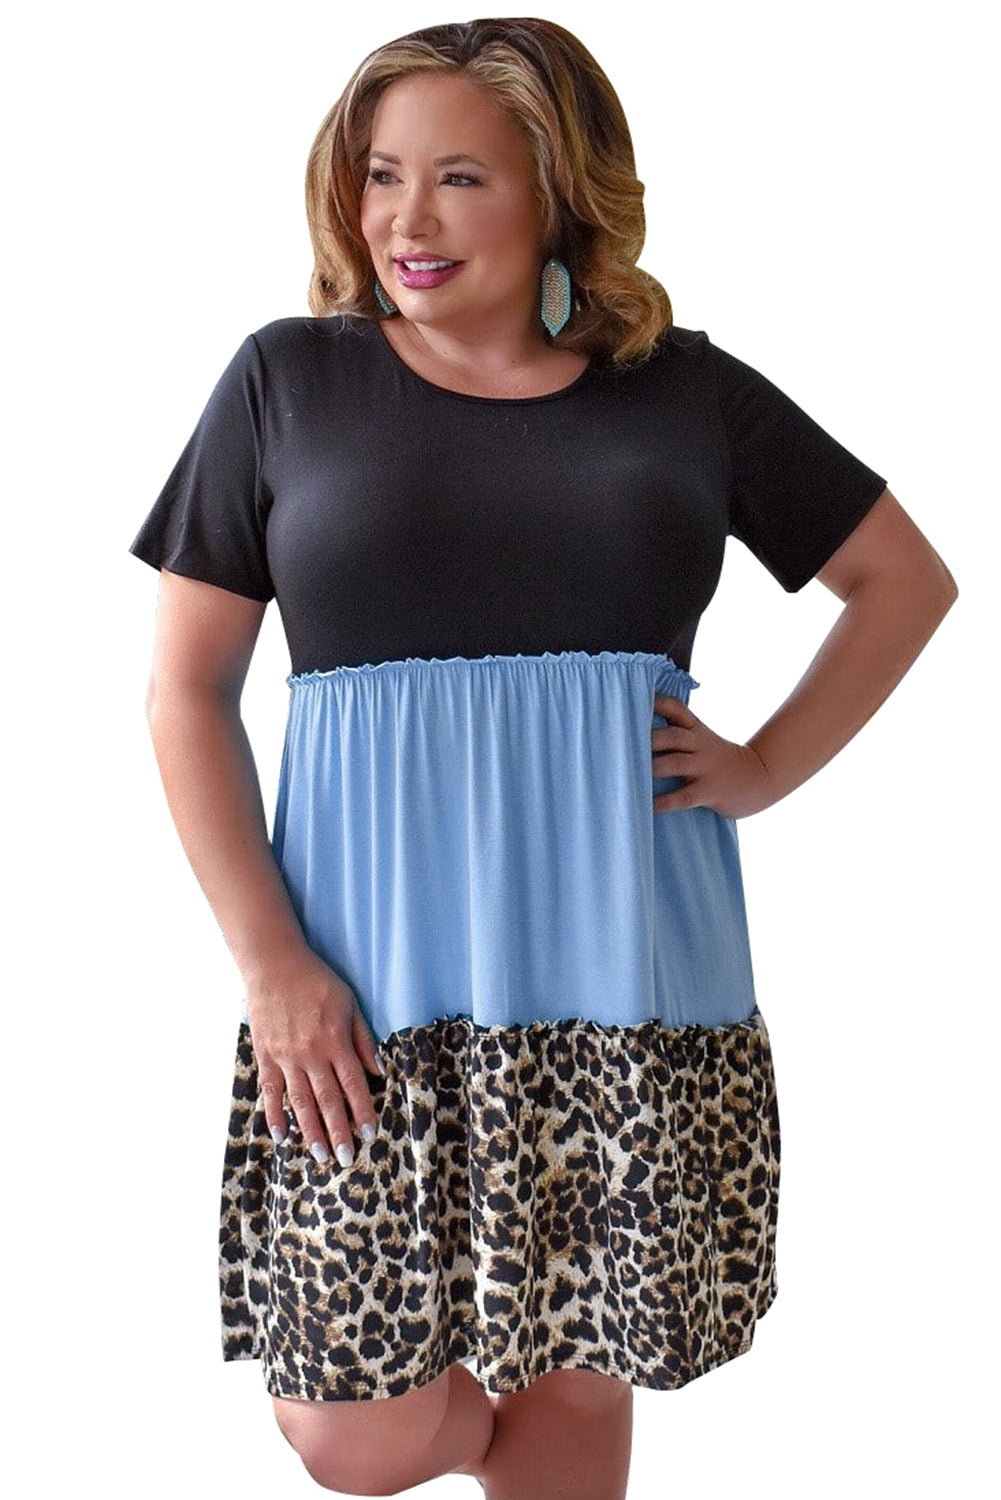 Sky Blue Colorblock Leopard Patchwork T Shirt Plus Size Dress